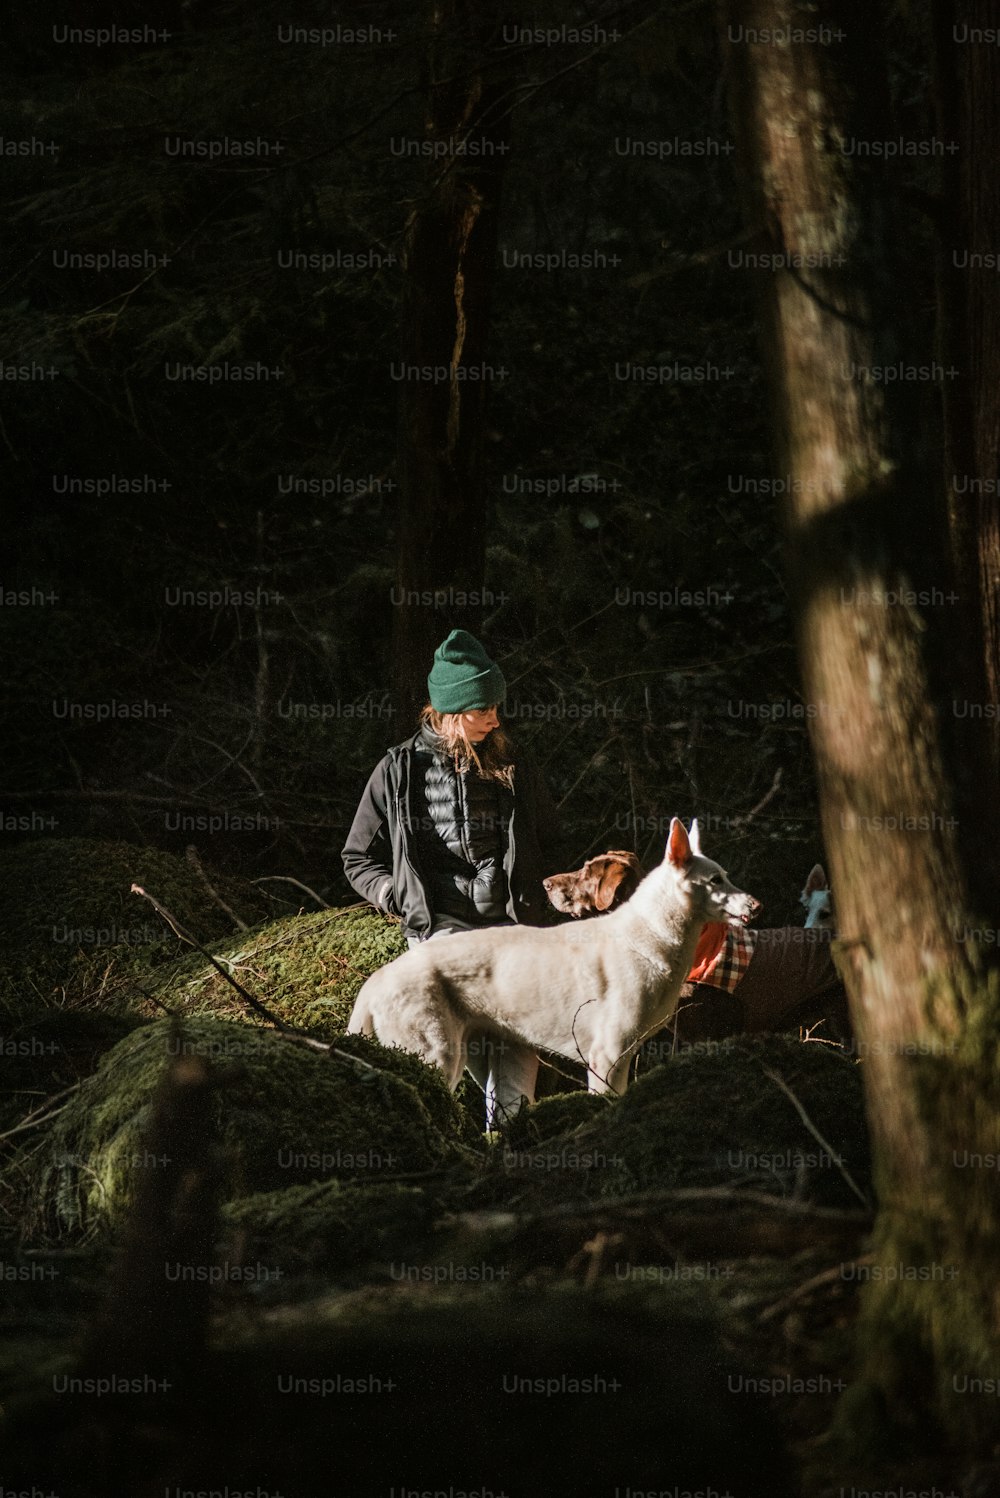 Un uomo inginocchiato accanto a una pecora bianca